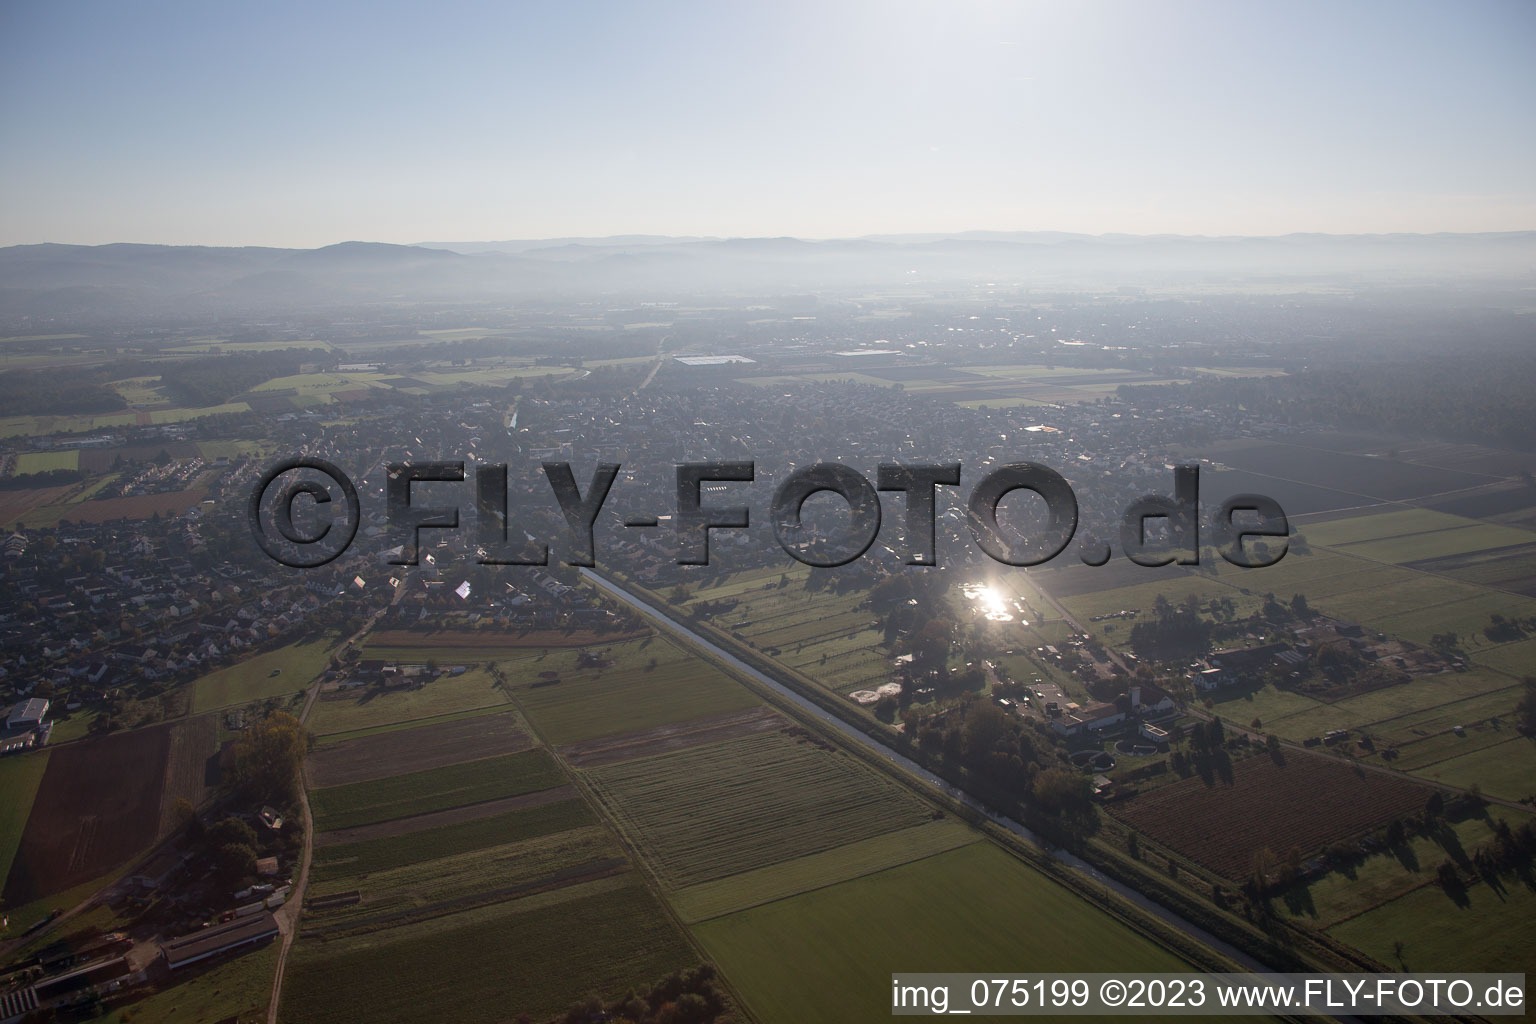 Drohnenbild von Einhausen im Bundesland Hessen, Deutschland